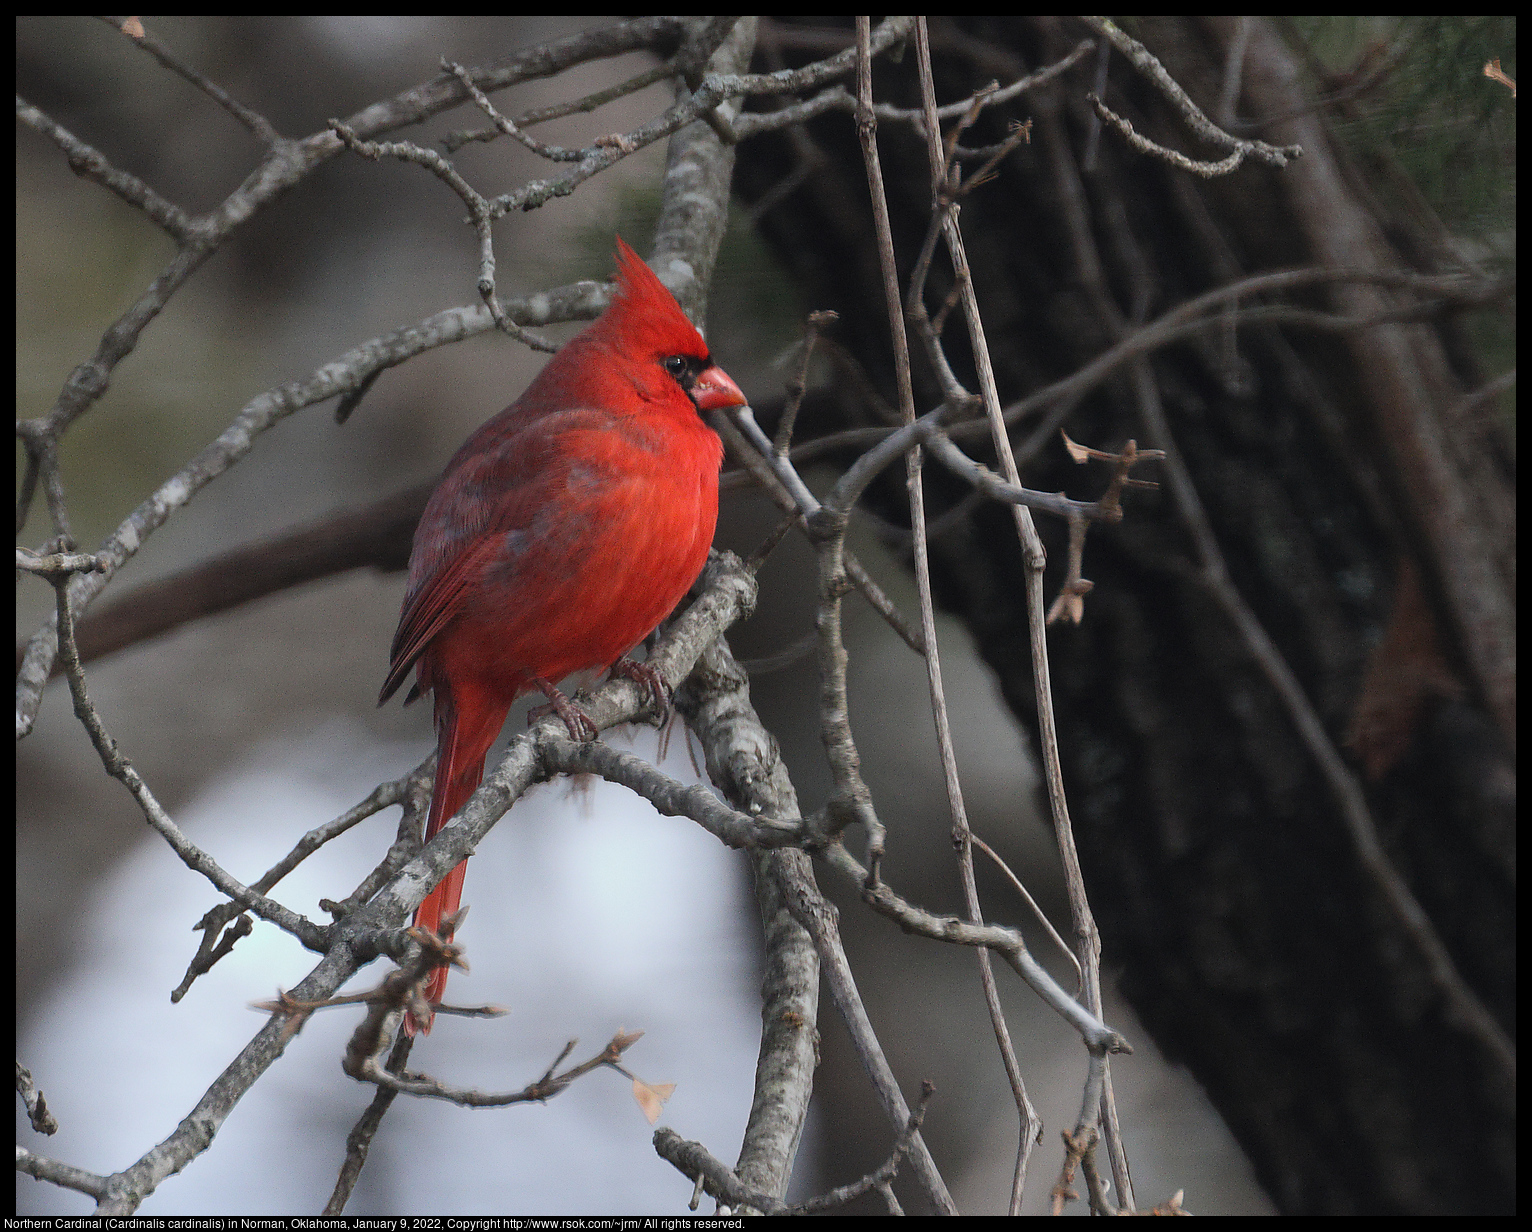 Northern Cardinal (Cardinalis cardinalis) in Norman, Oklahoma, January 9, 2022